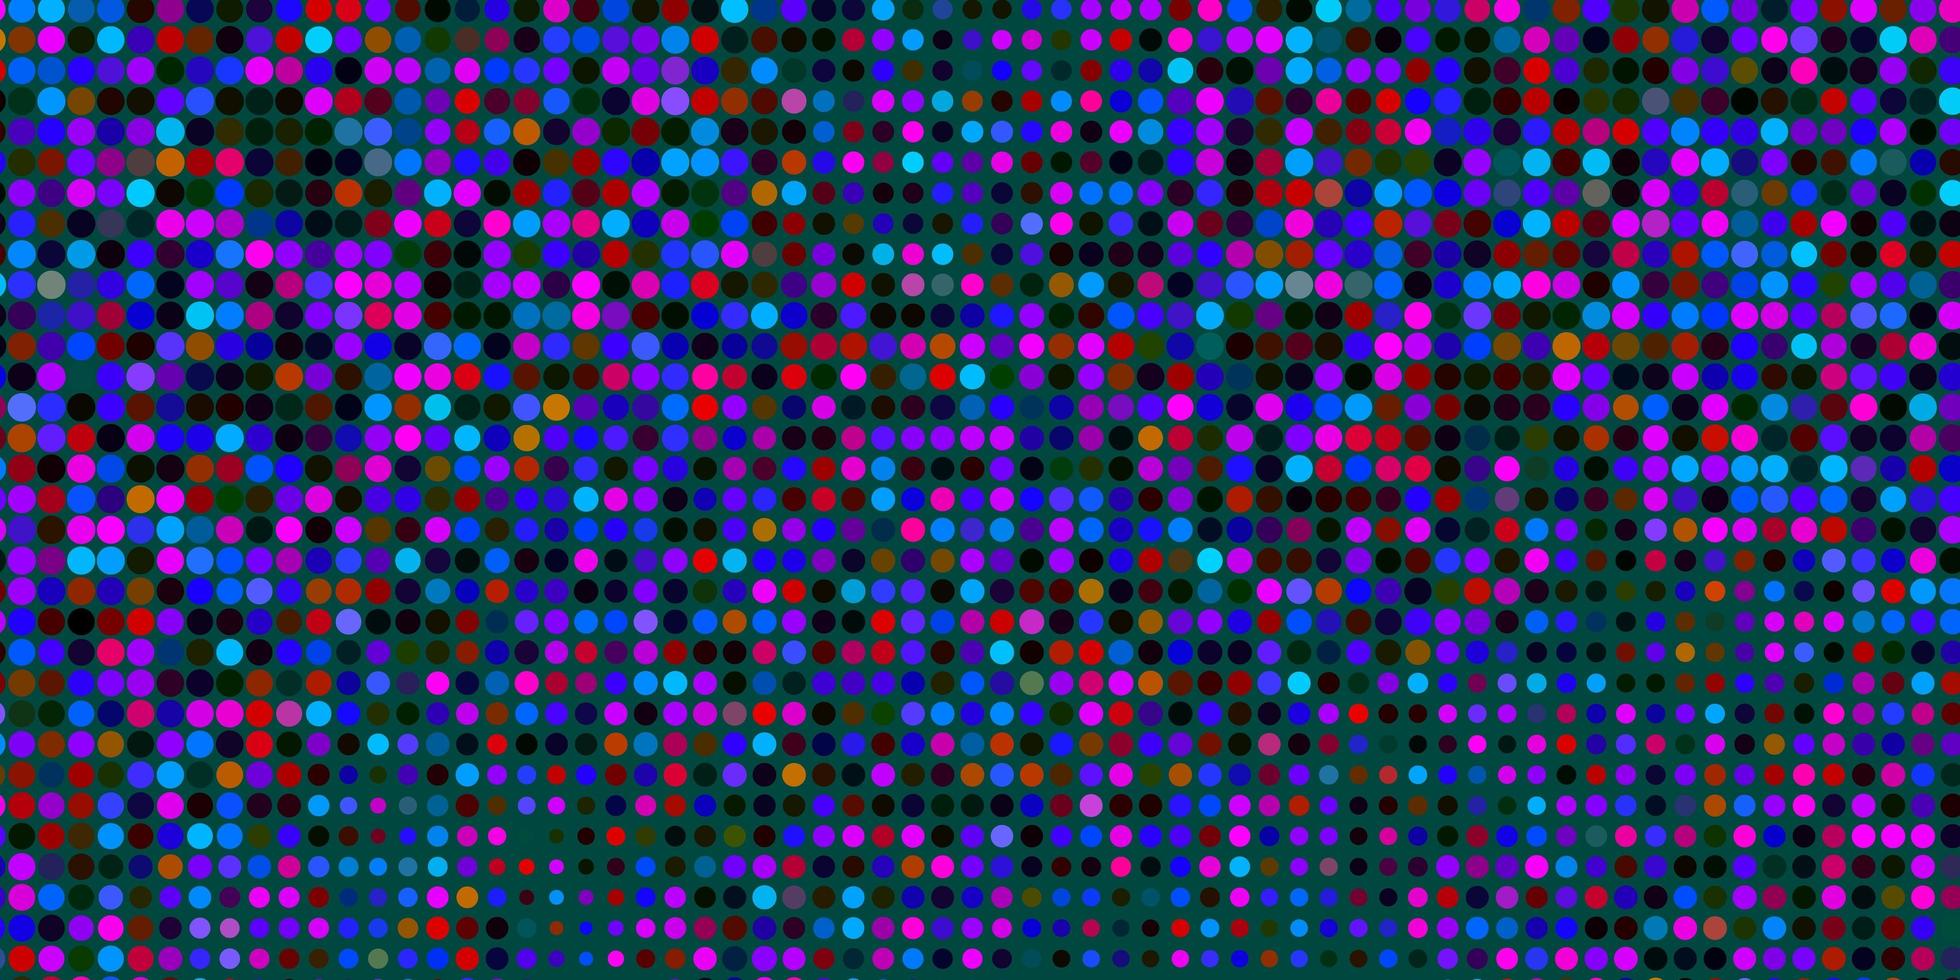 cenário de vetor multicolorido escuro com pontos.